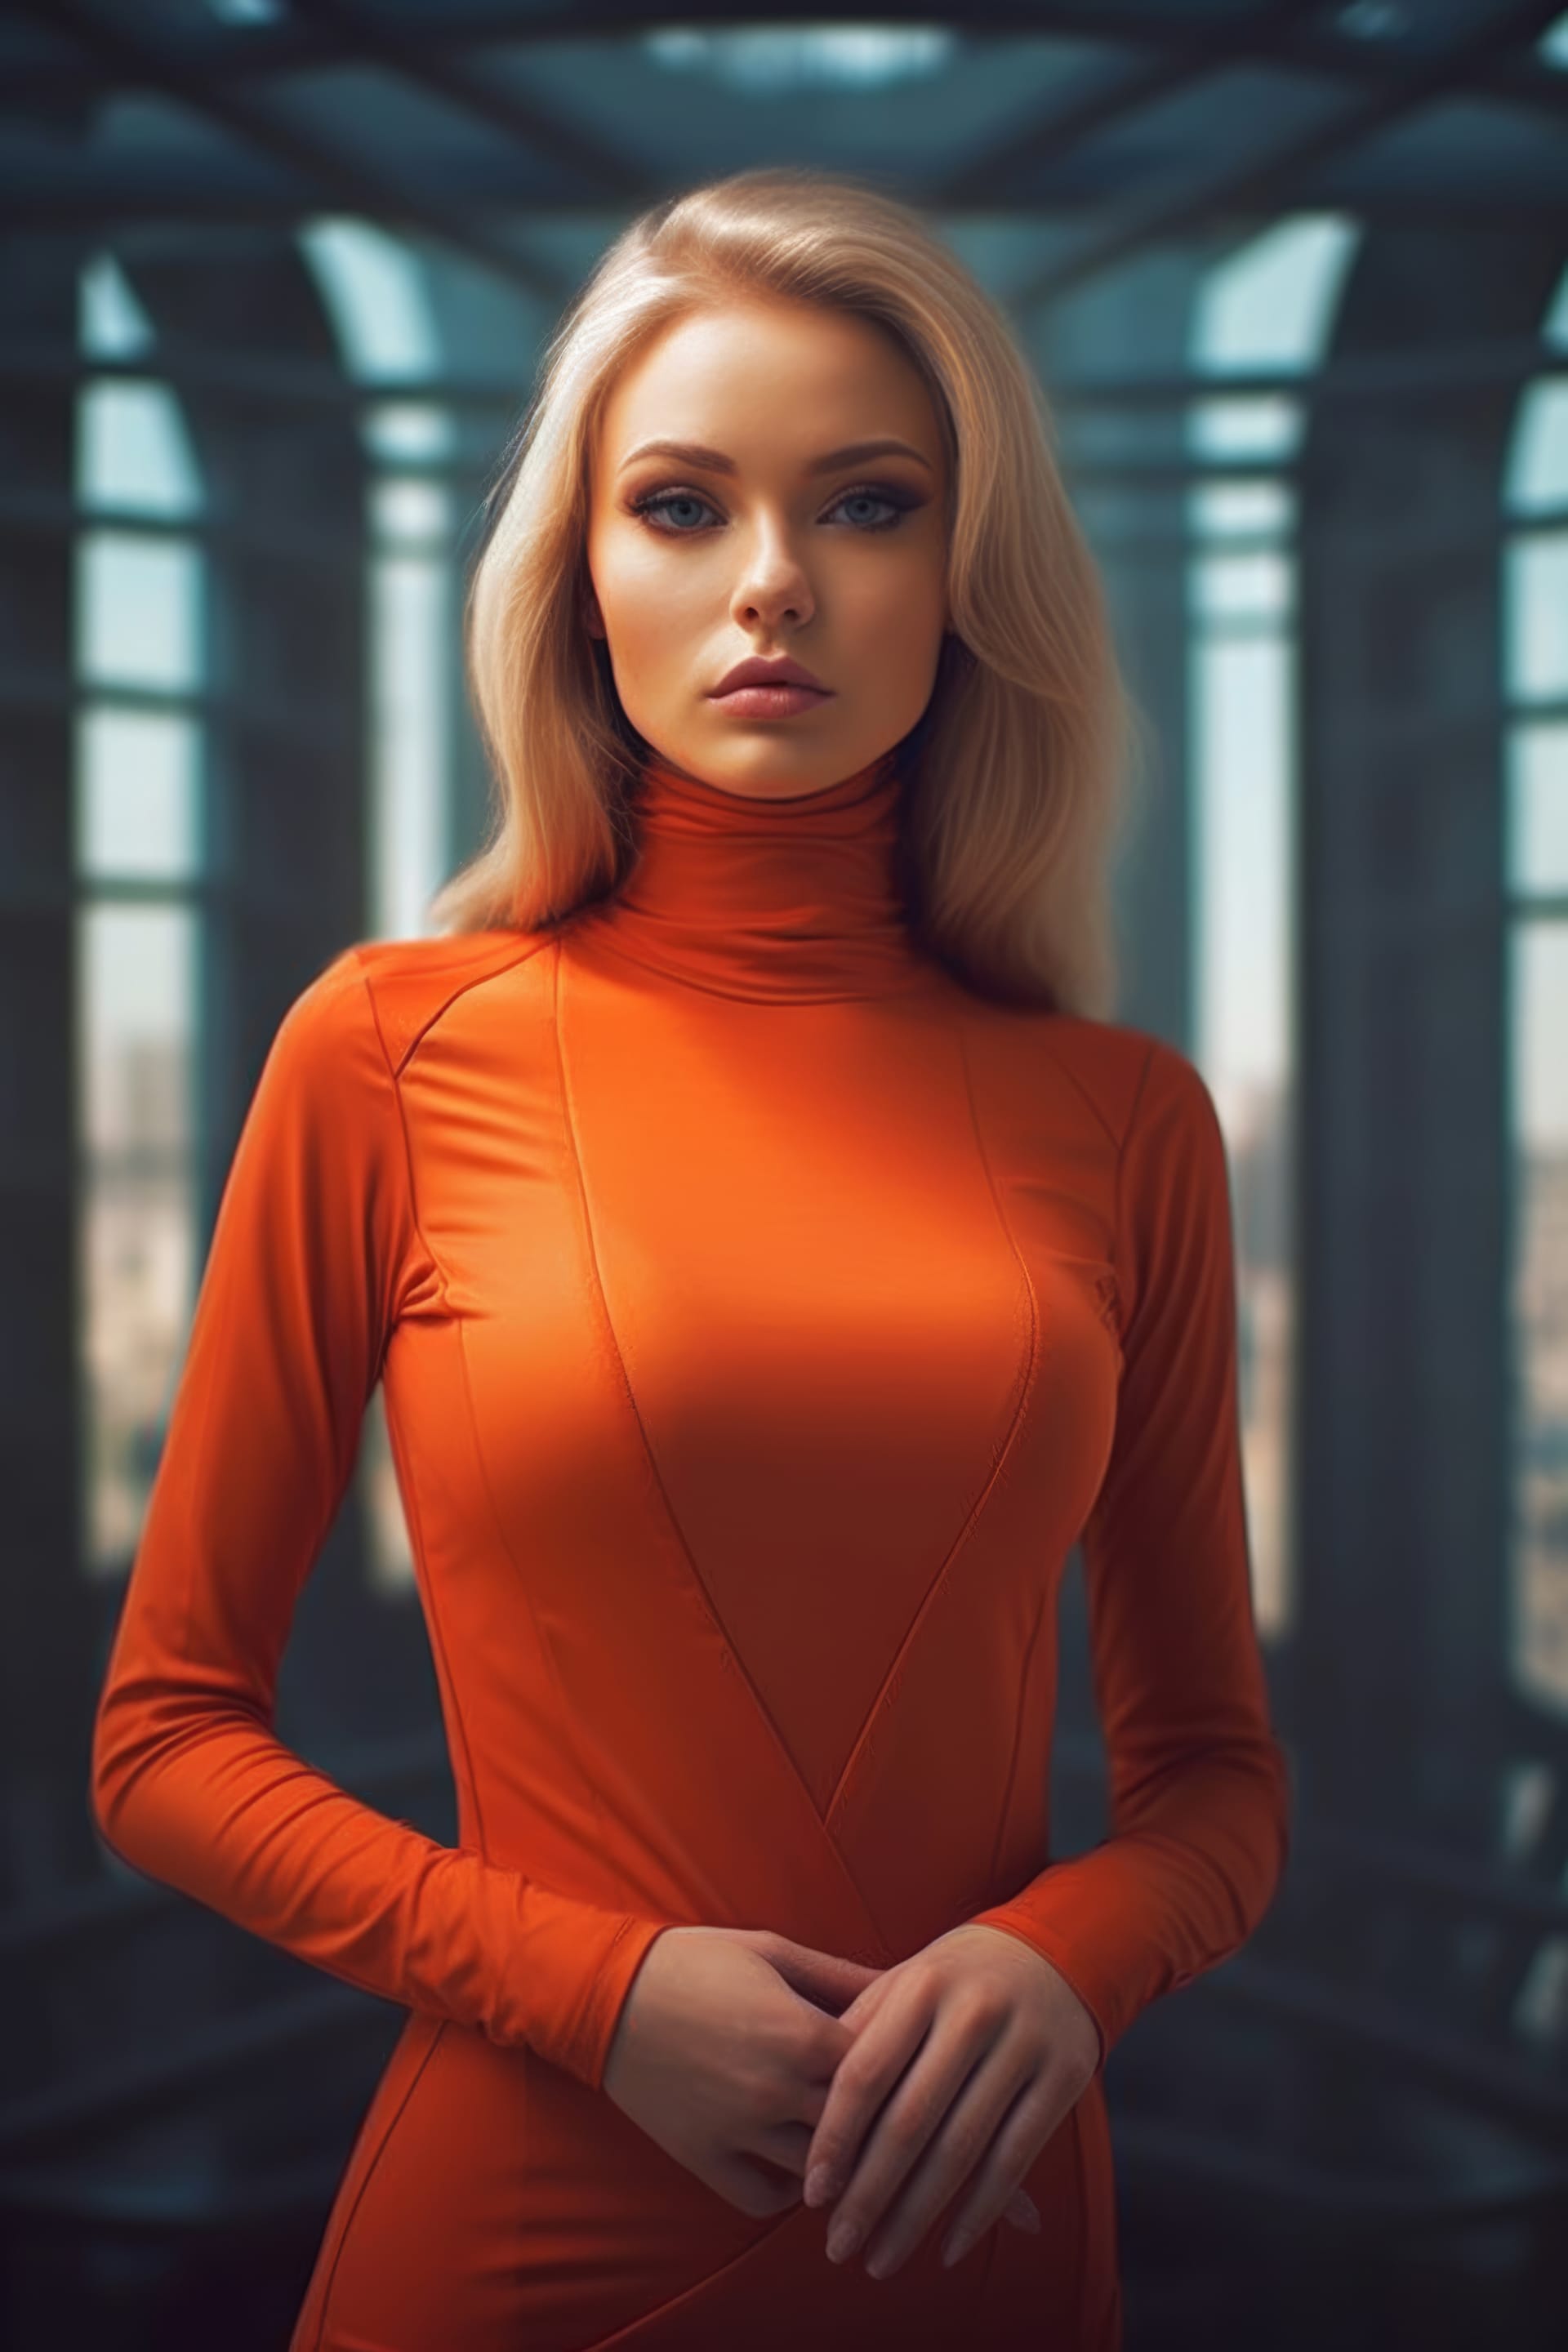 Woman orange top beautiful portrait excellent picture